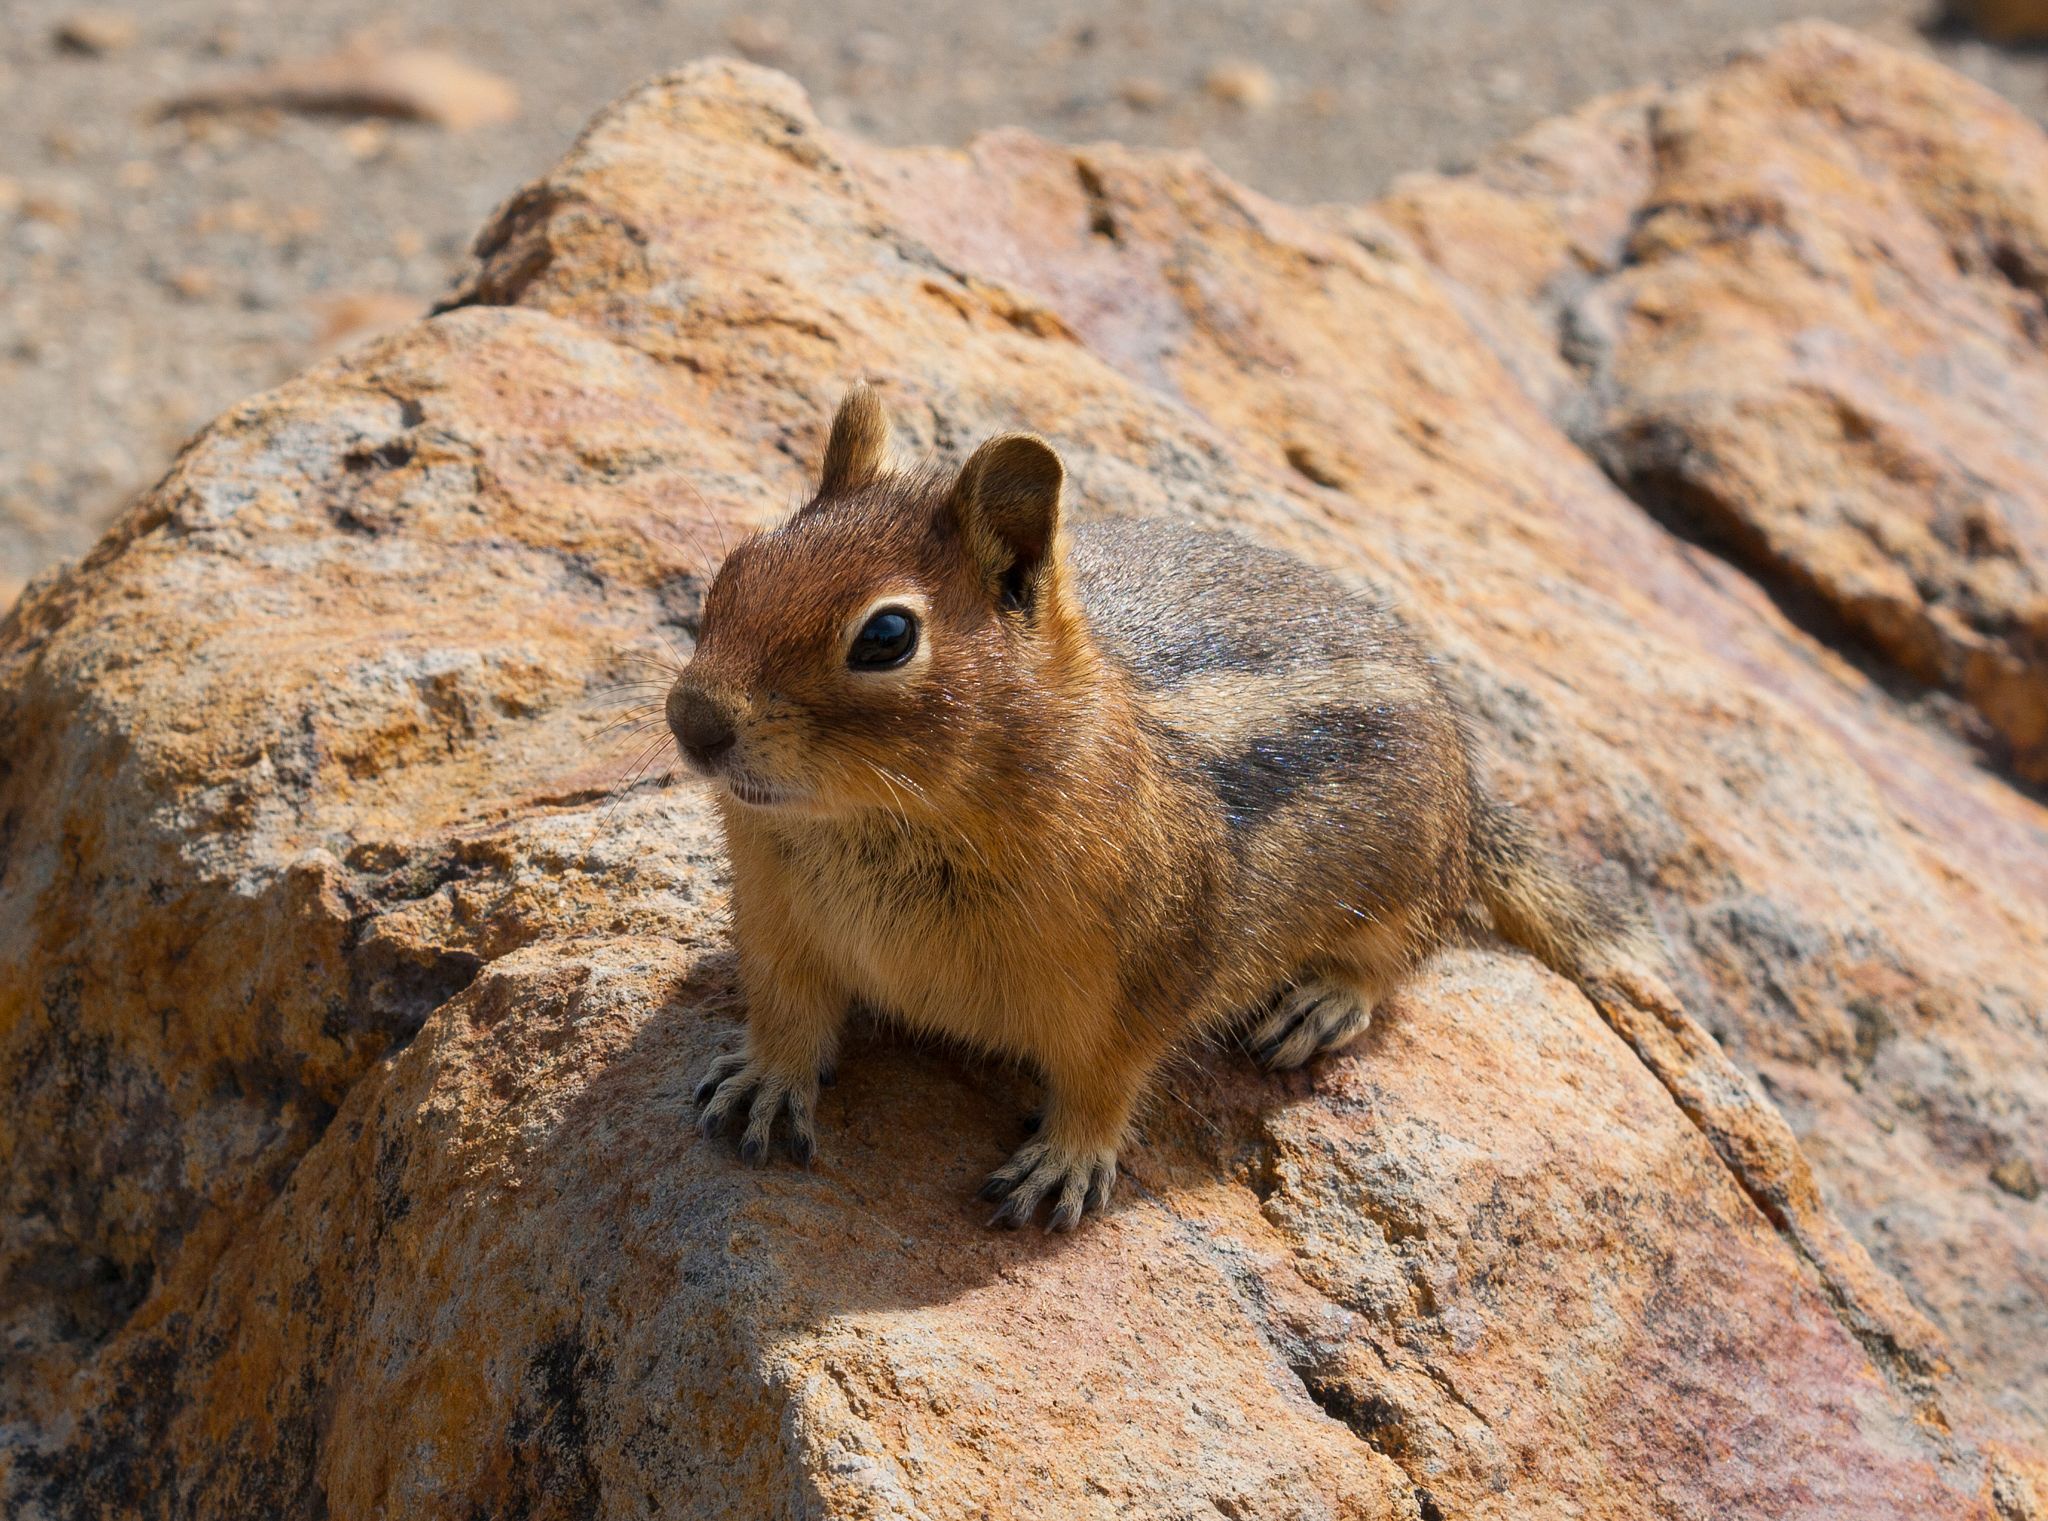 Chipmunk sitting on a rock